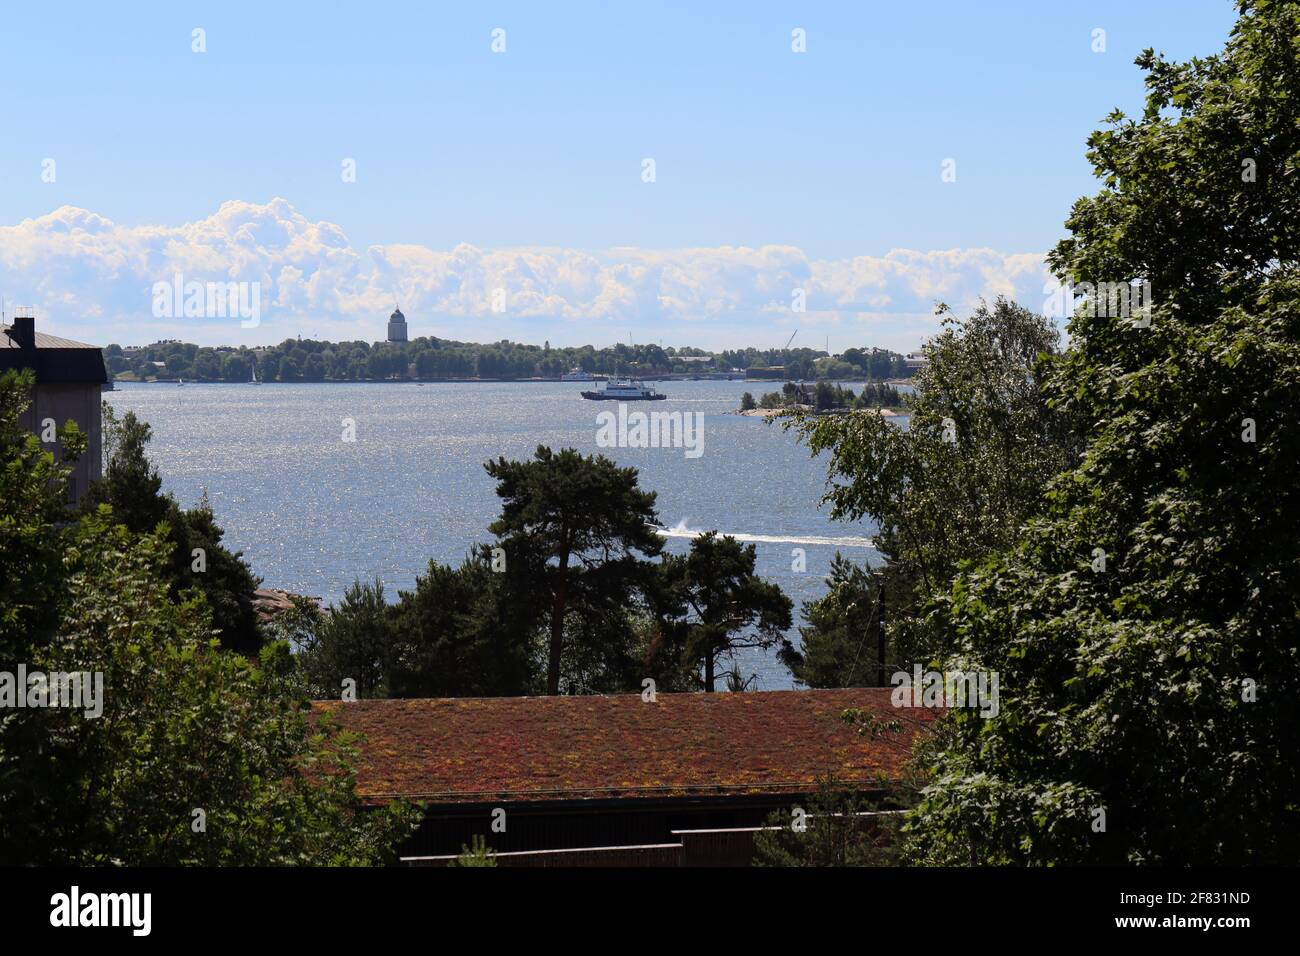 Una vista dall'isola dello zoo di Korkeasaari verso il centro di Helsinki, giugno 2019. Giorno estivo soleggiato. È possibile vedere la foresta, le barche e gli edifici della capitale. Foto Stock